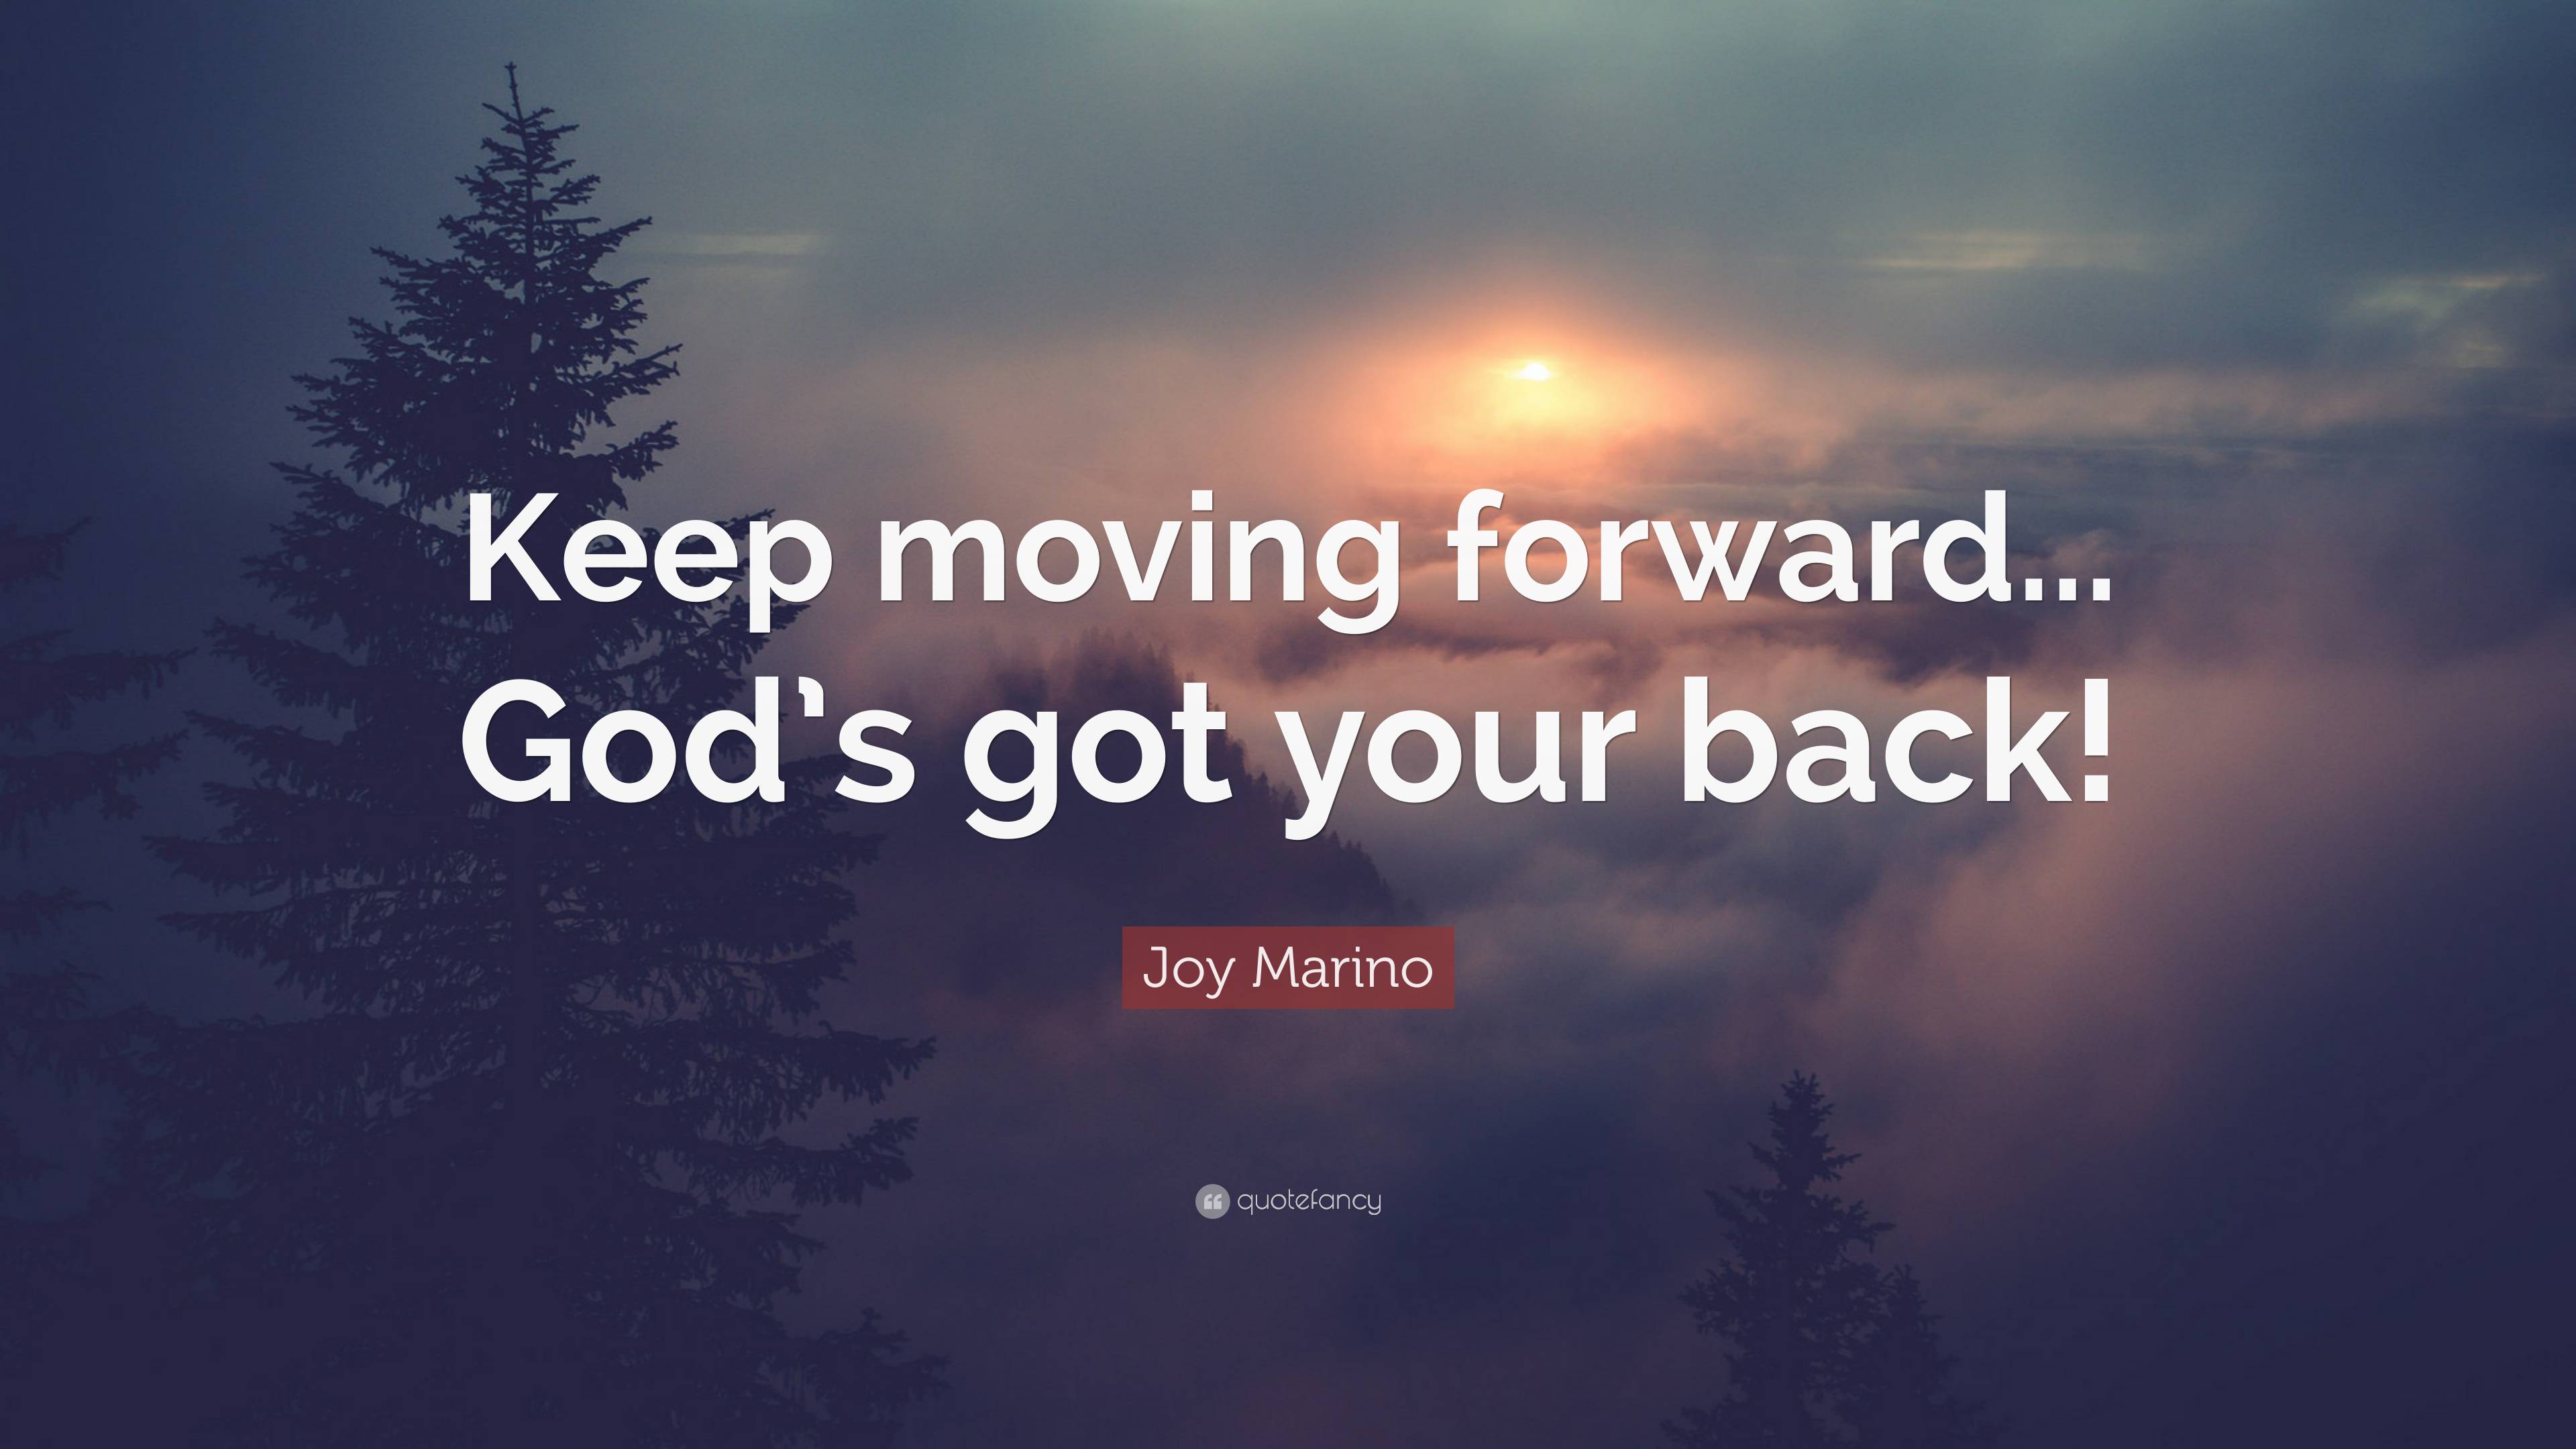 Joy Marino Quote: “Keep moving forward... God’s got your back!”